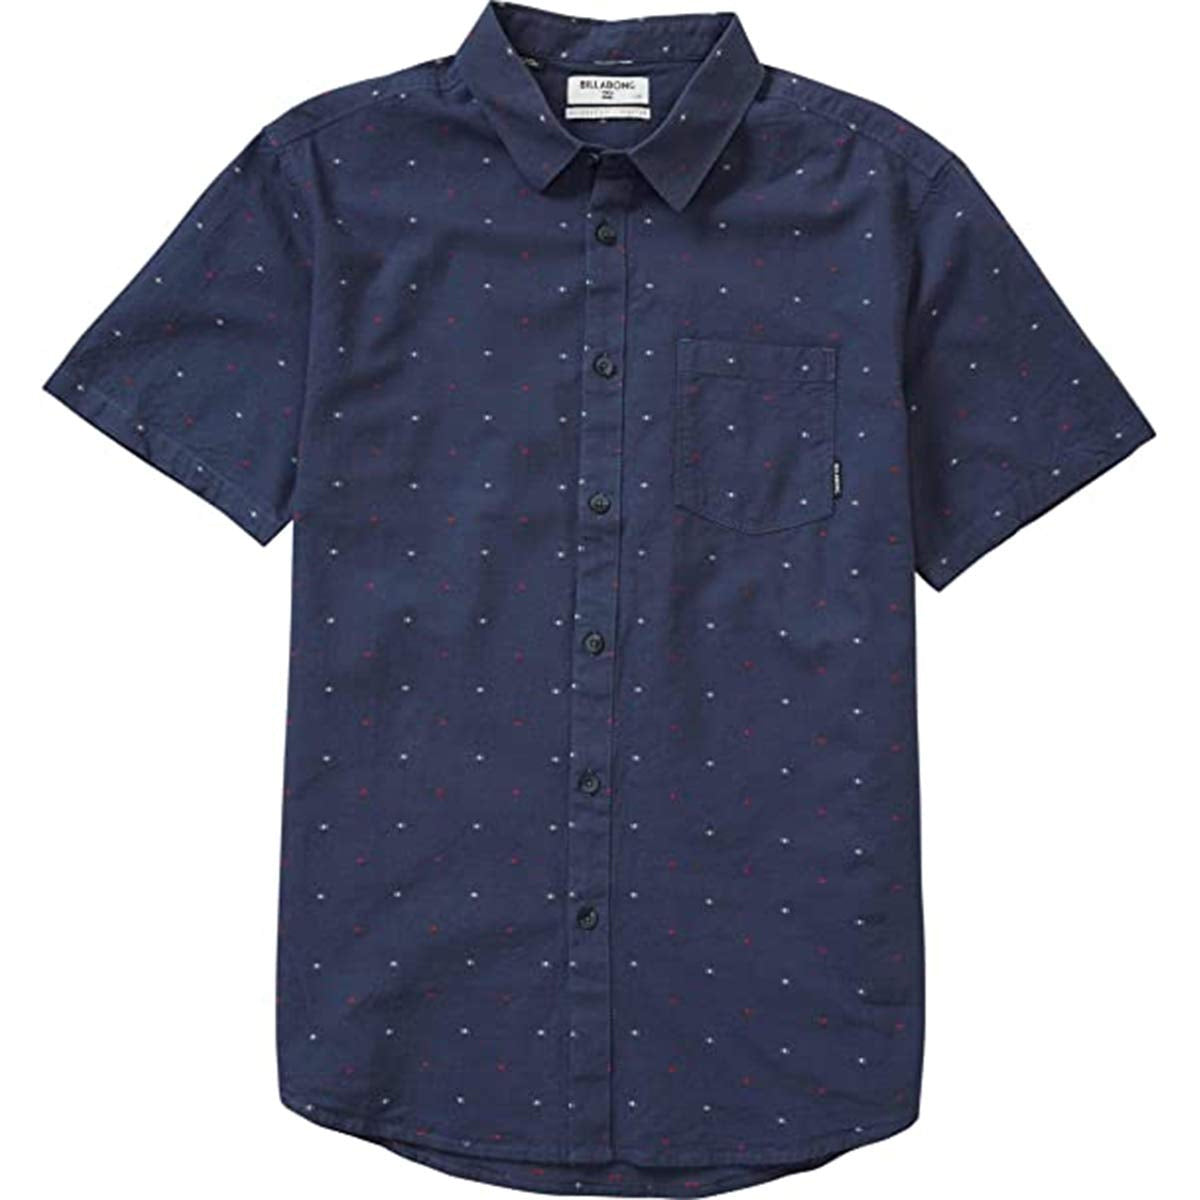 Billabong Cruisin Men's Button Up Short Sleeve Shirts - Navy